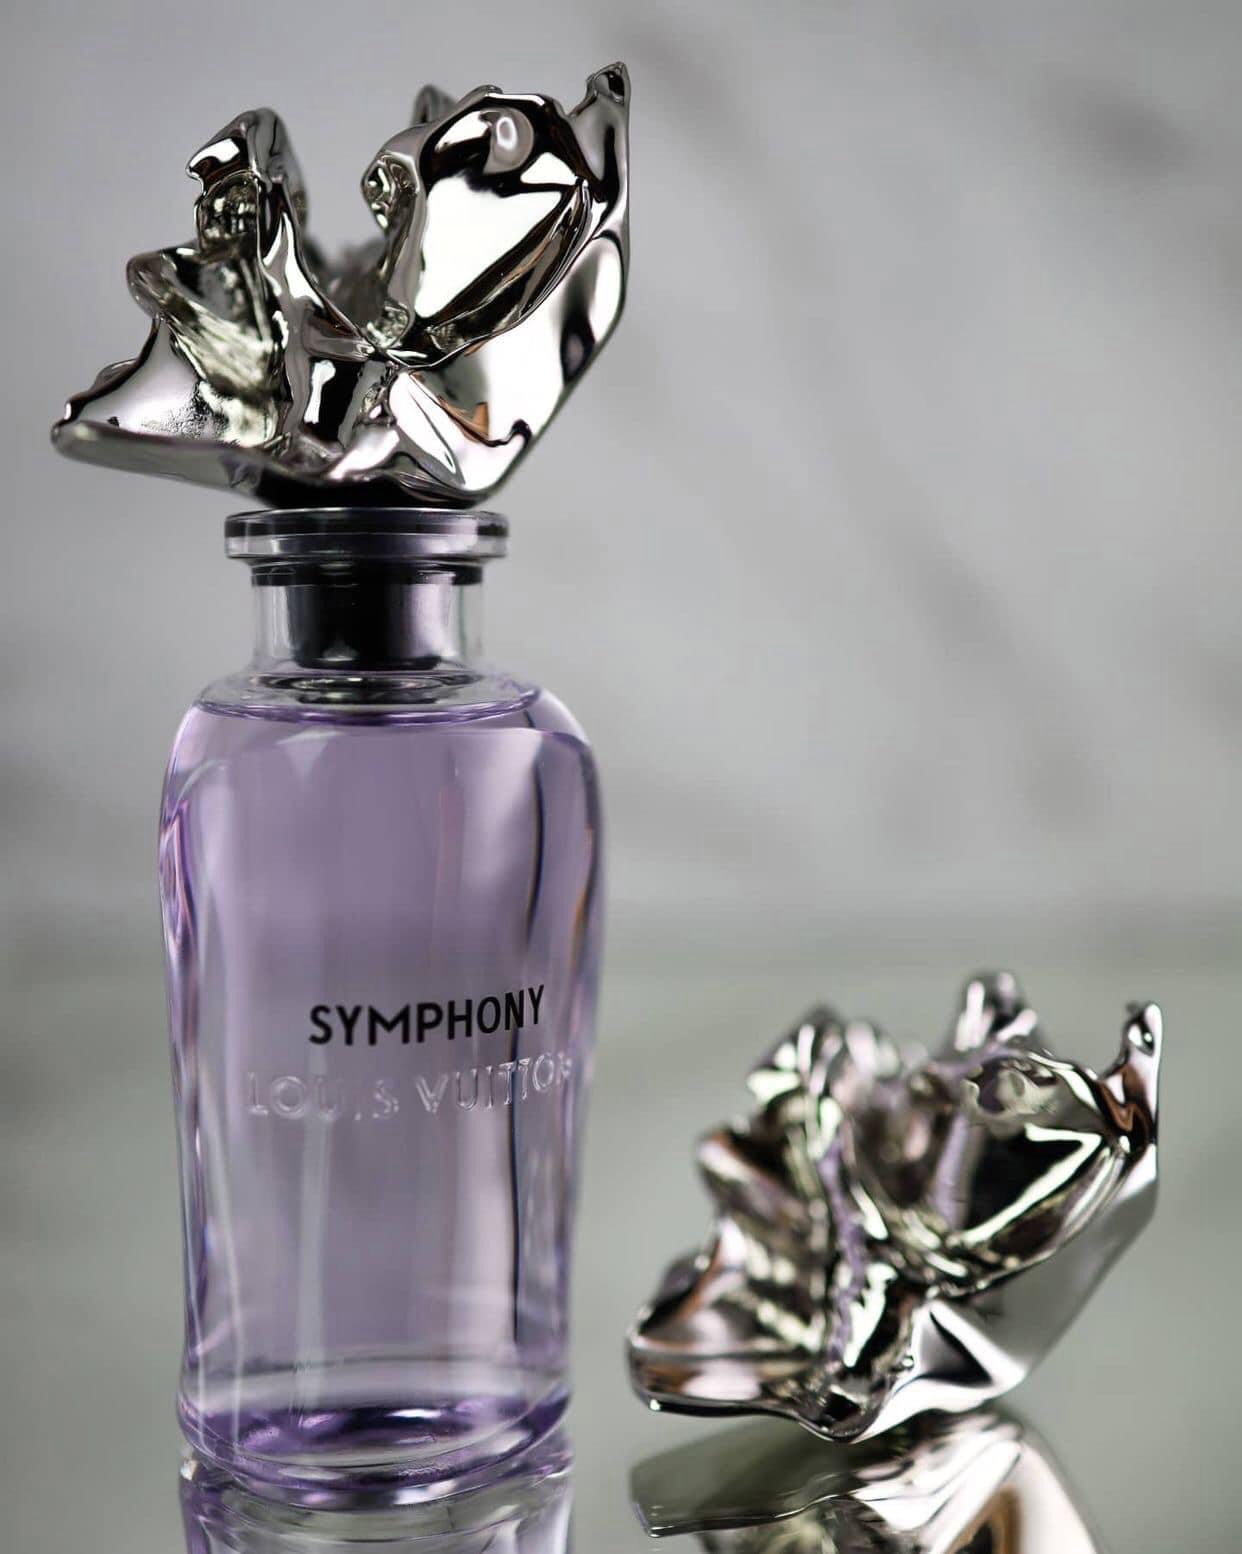 ルイヴィトン SYMPHONY 香水 | myglobaltax.com